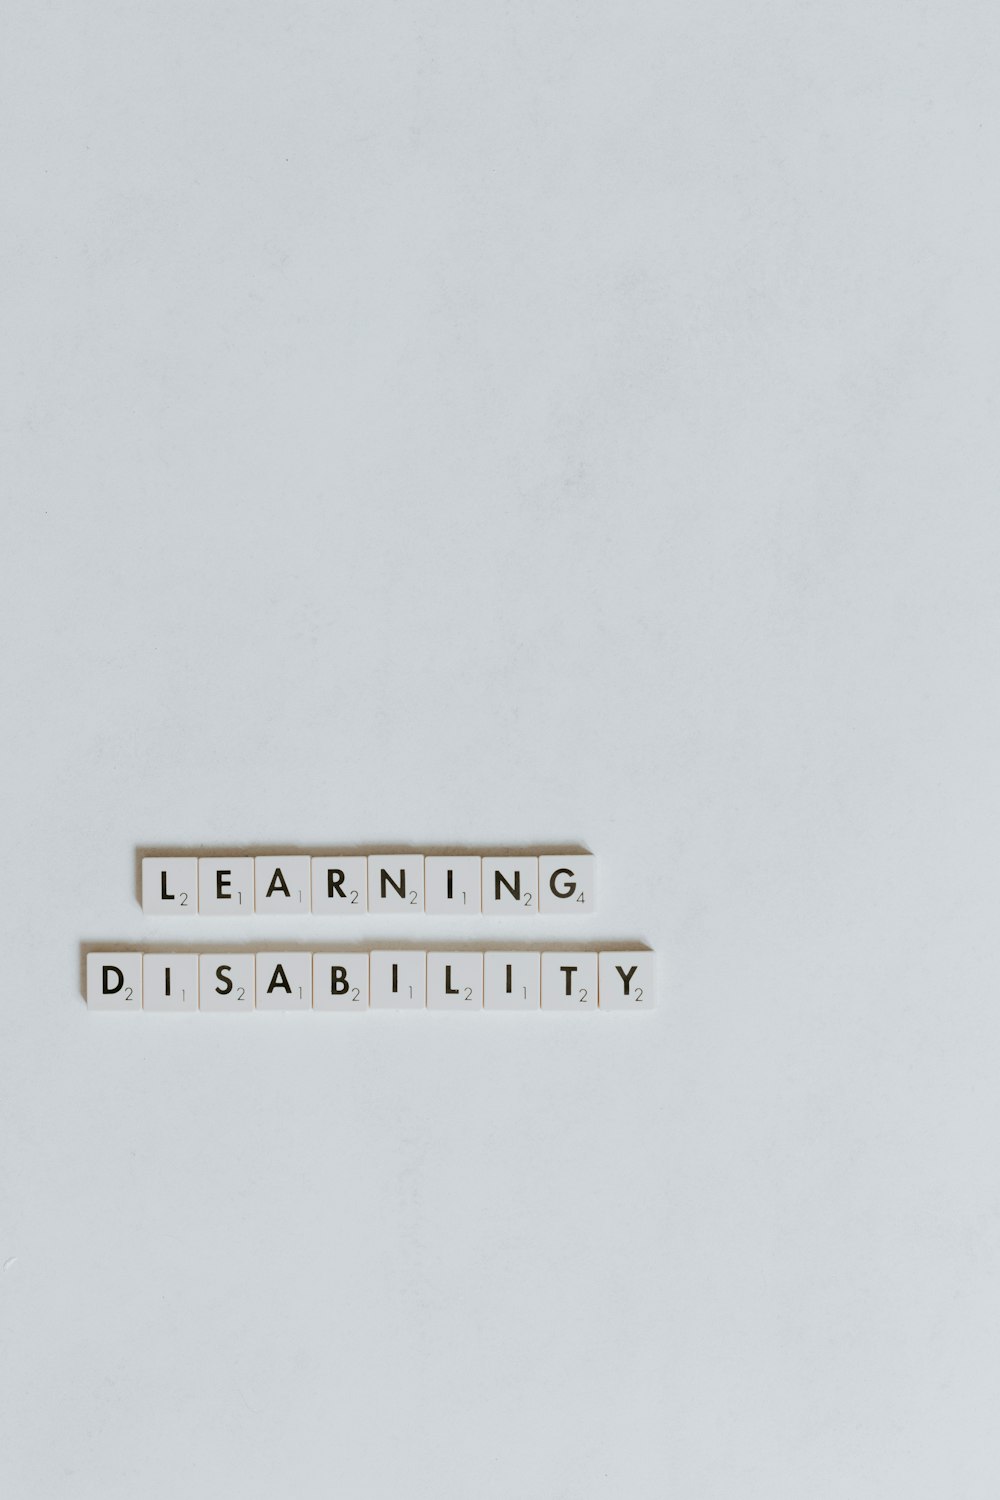 学習障害という言葉が綴られたコンピューターのキーボード